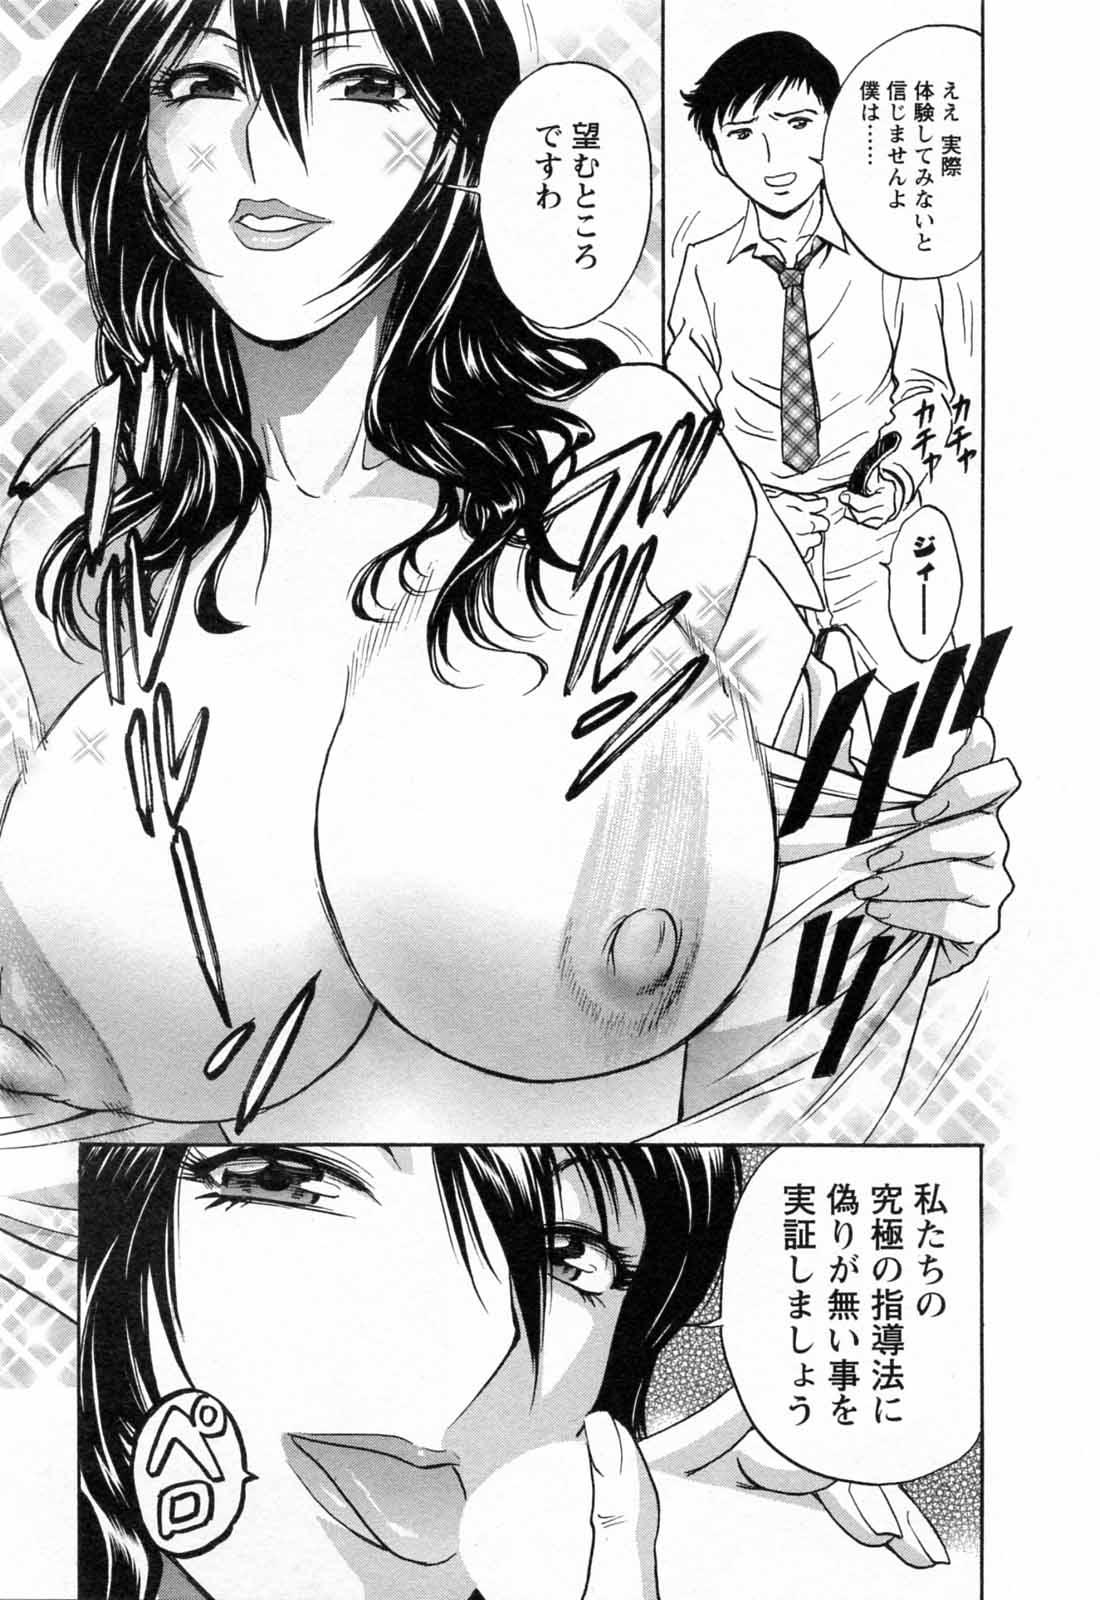 [Hidemaru] Mo-Retsu! Boin Sensei (Boing Boing Teacher) Vol.5 20